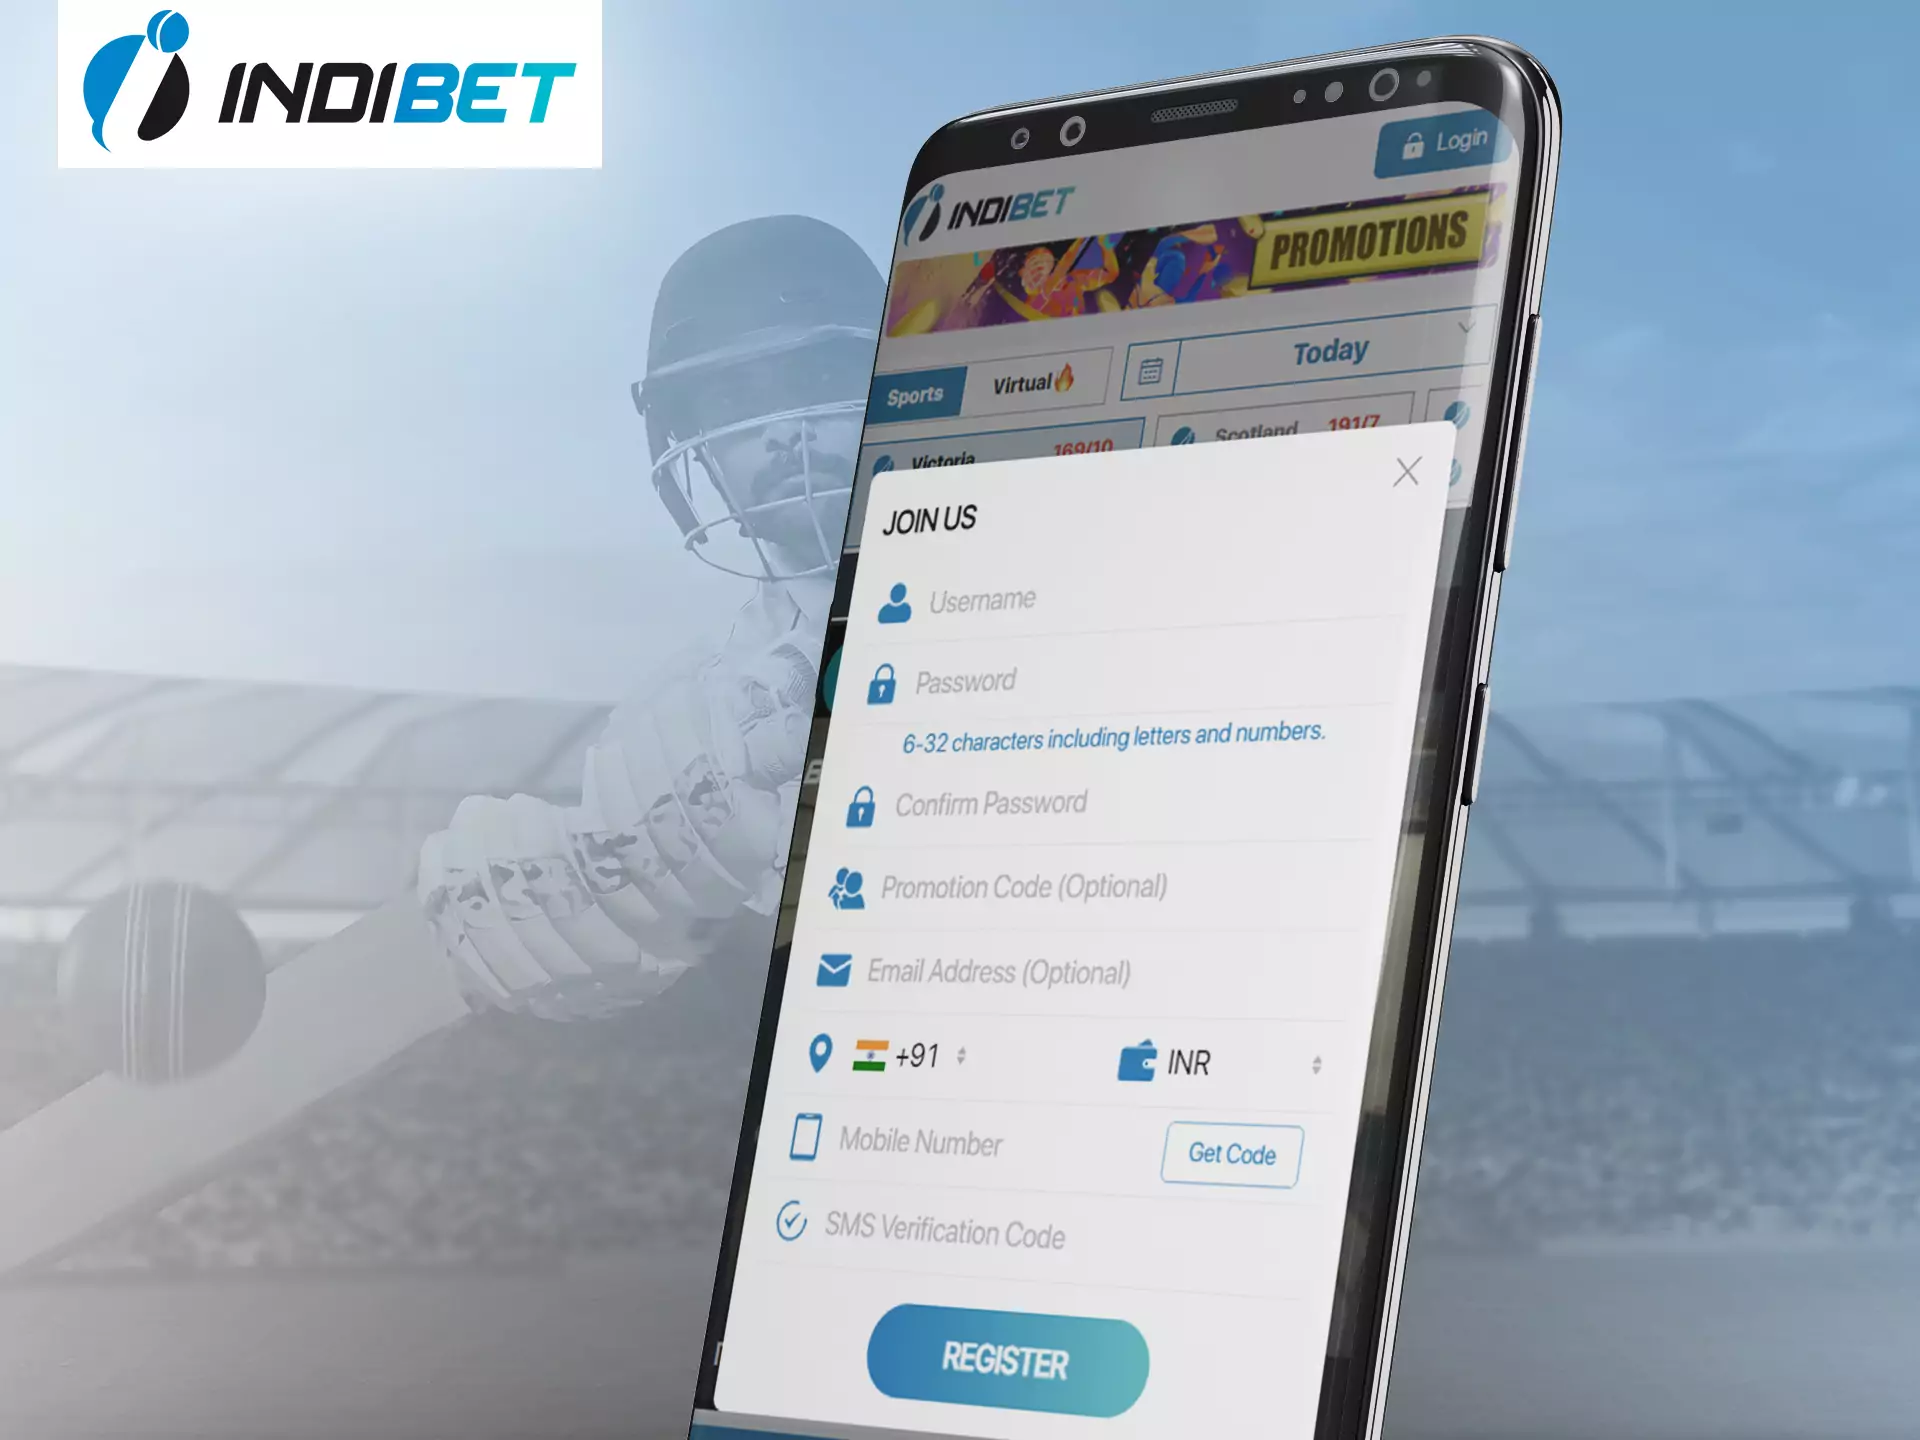 Register in two steps in Indibet app.